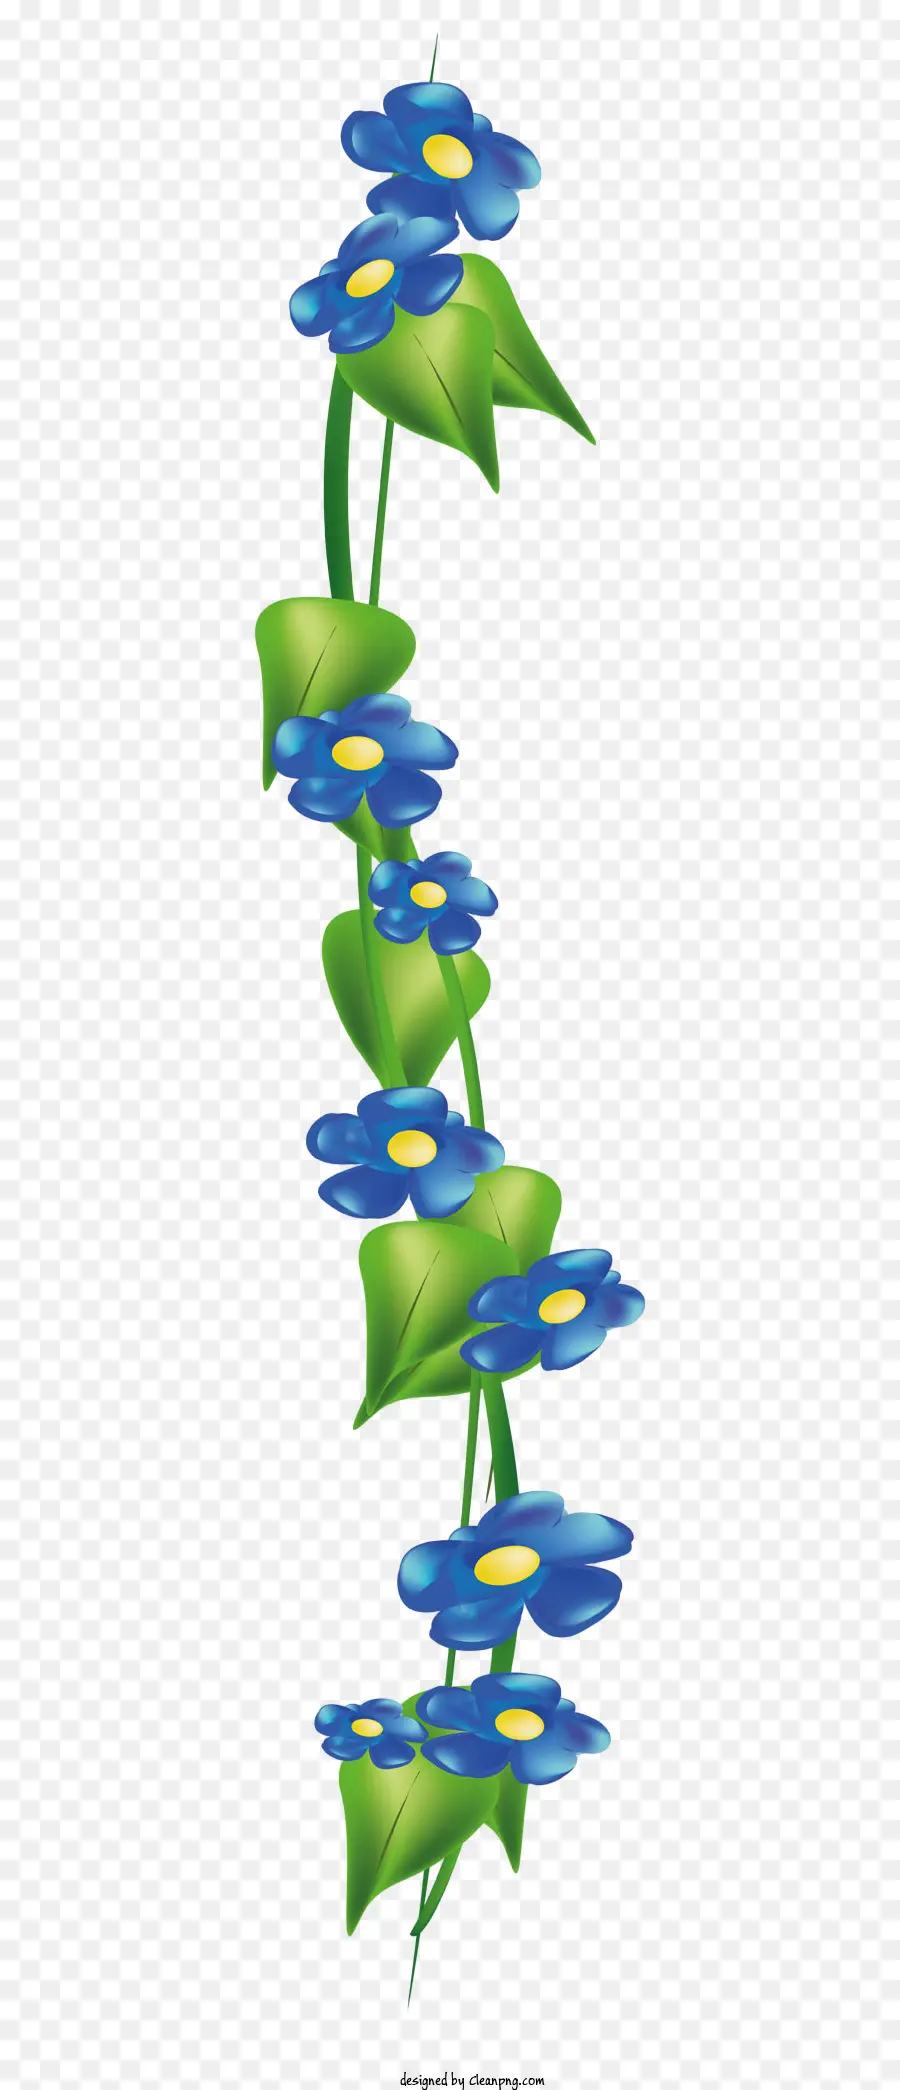 Blumen Linie - Einfache, elegante blaue Blume mit weißem Zentrum